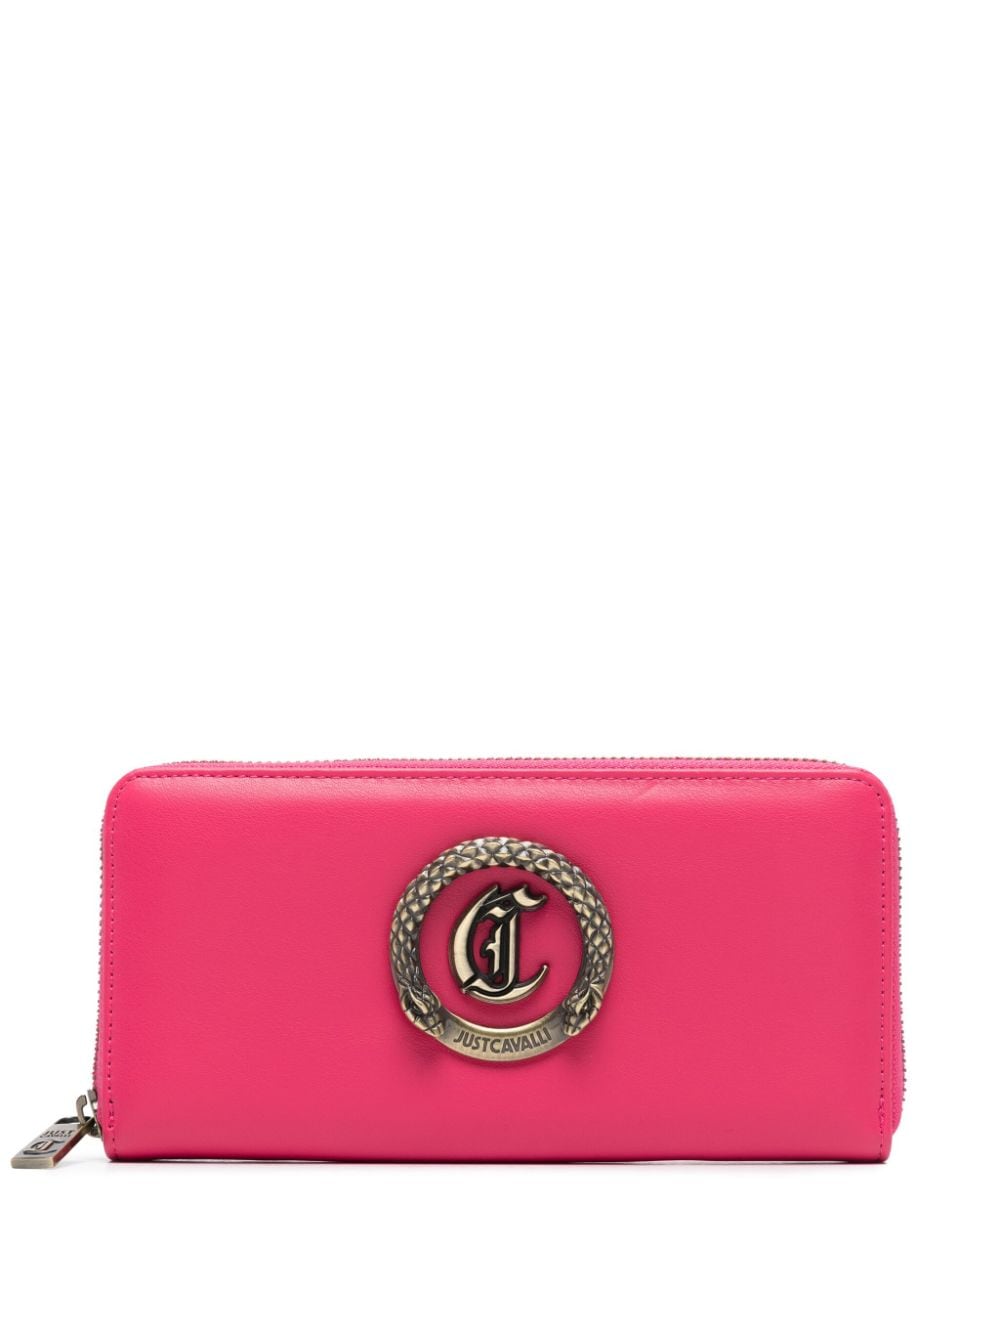 Just Cavalli metallic-snake wallet - Pink von Just Cavalli